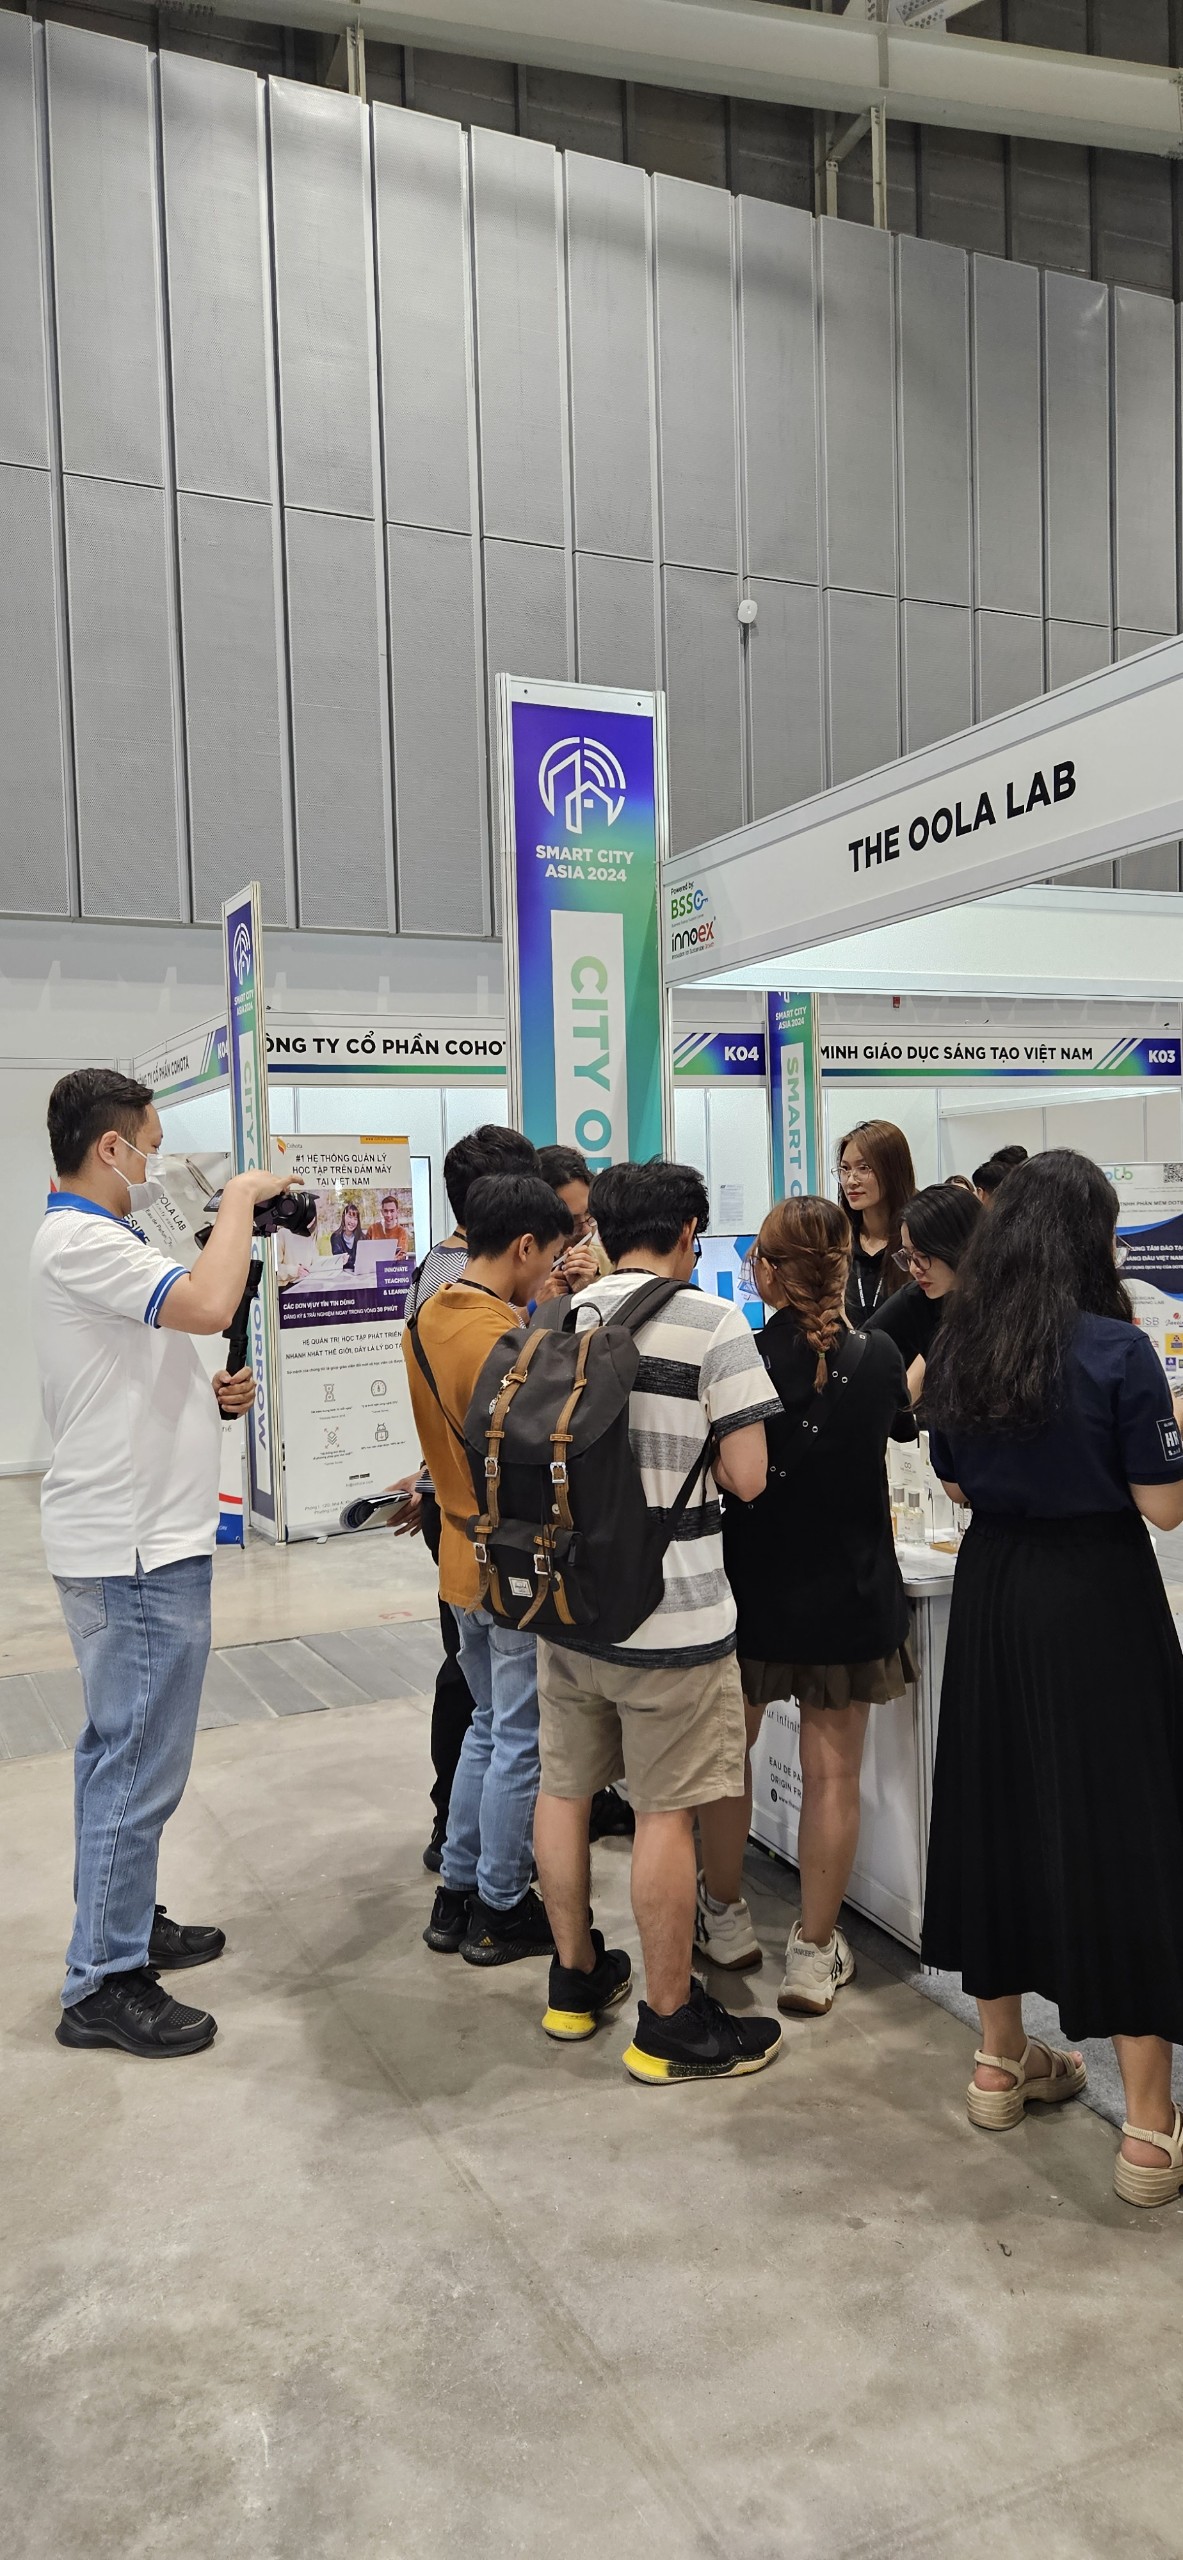 The OOLa Lab Tại Smart City Asia 2024